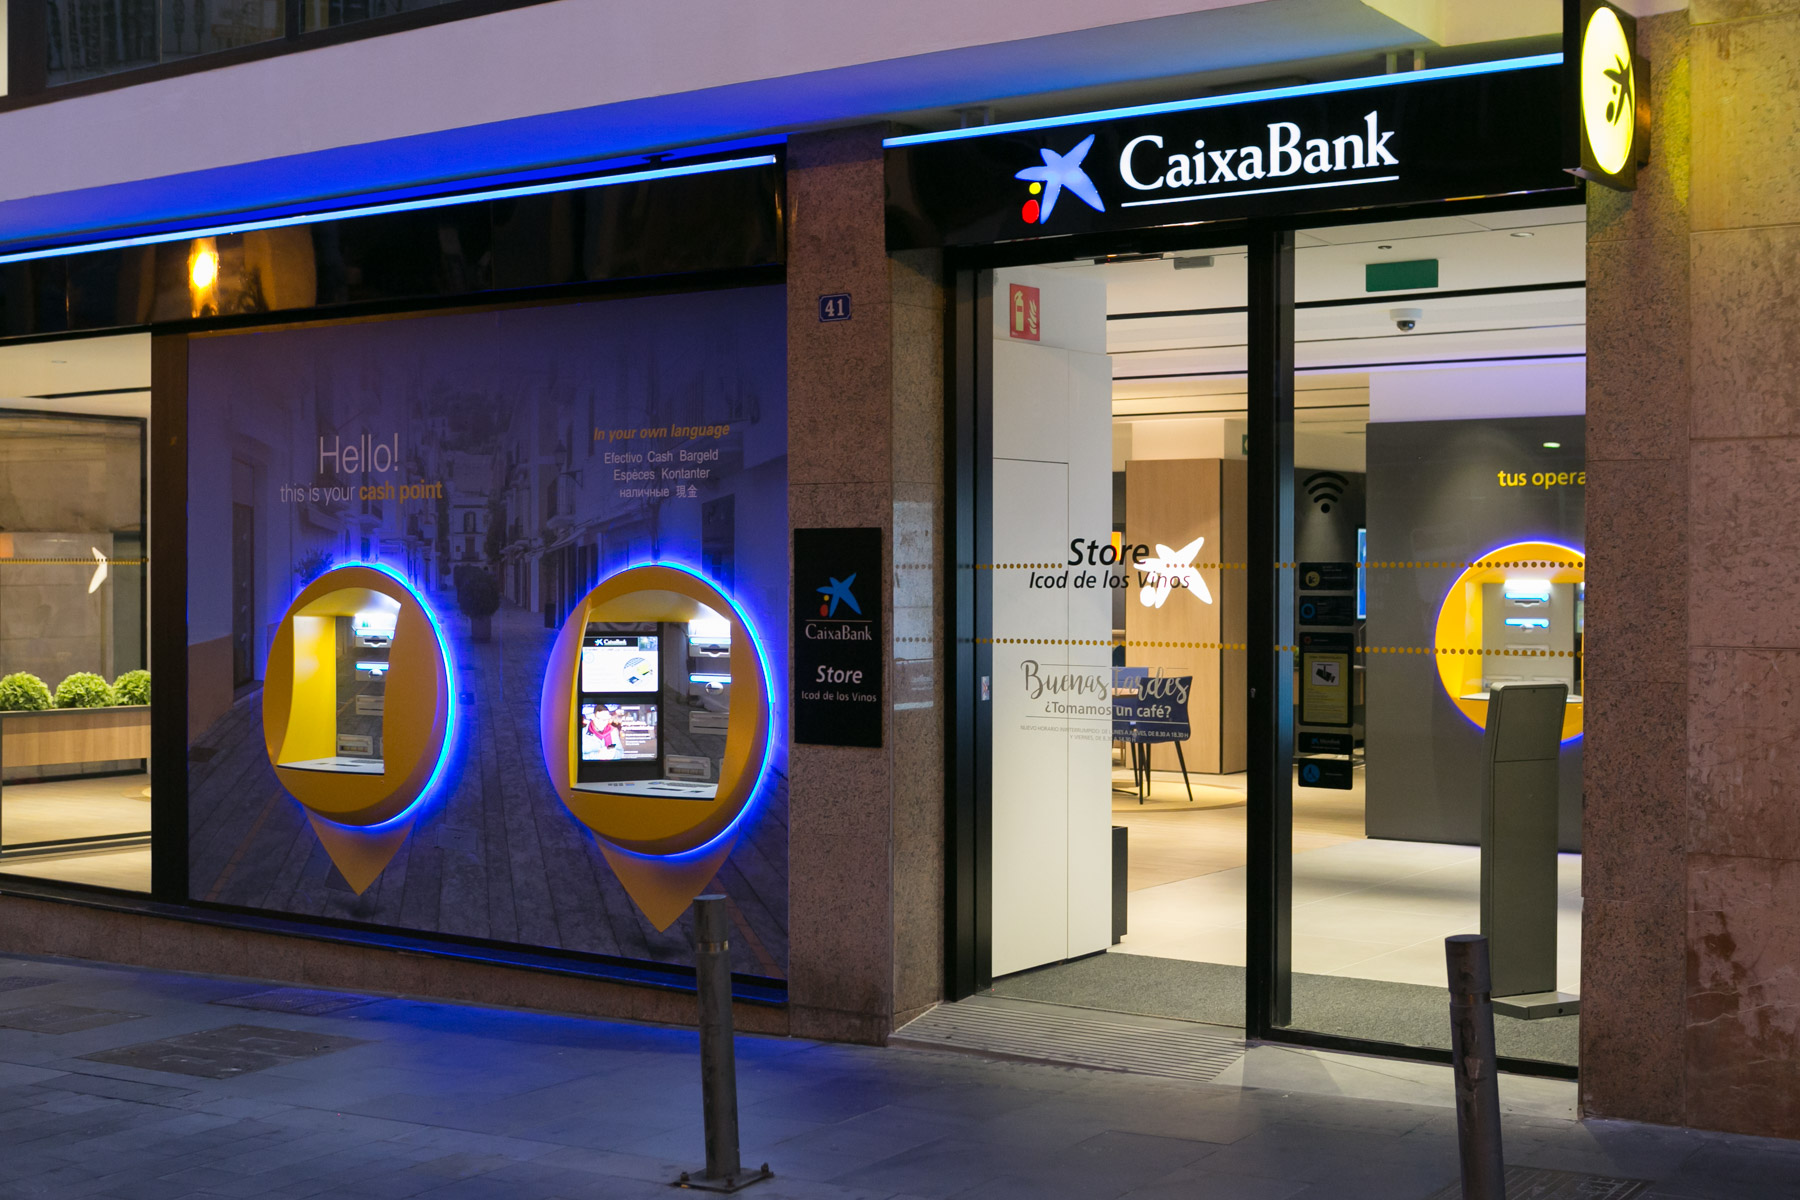 CaixaBank adelanta el pago de las pensiones y activa un plan para evitar colas en las oficinas